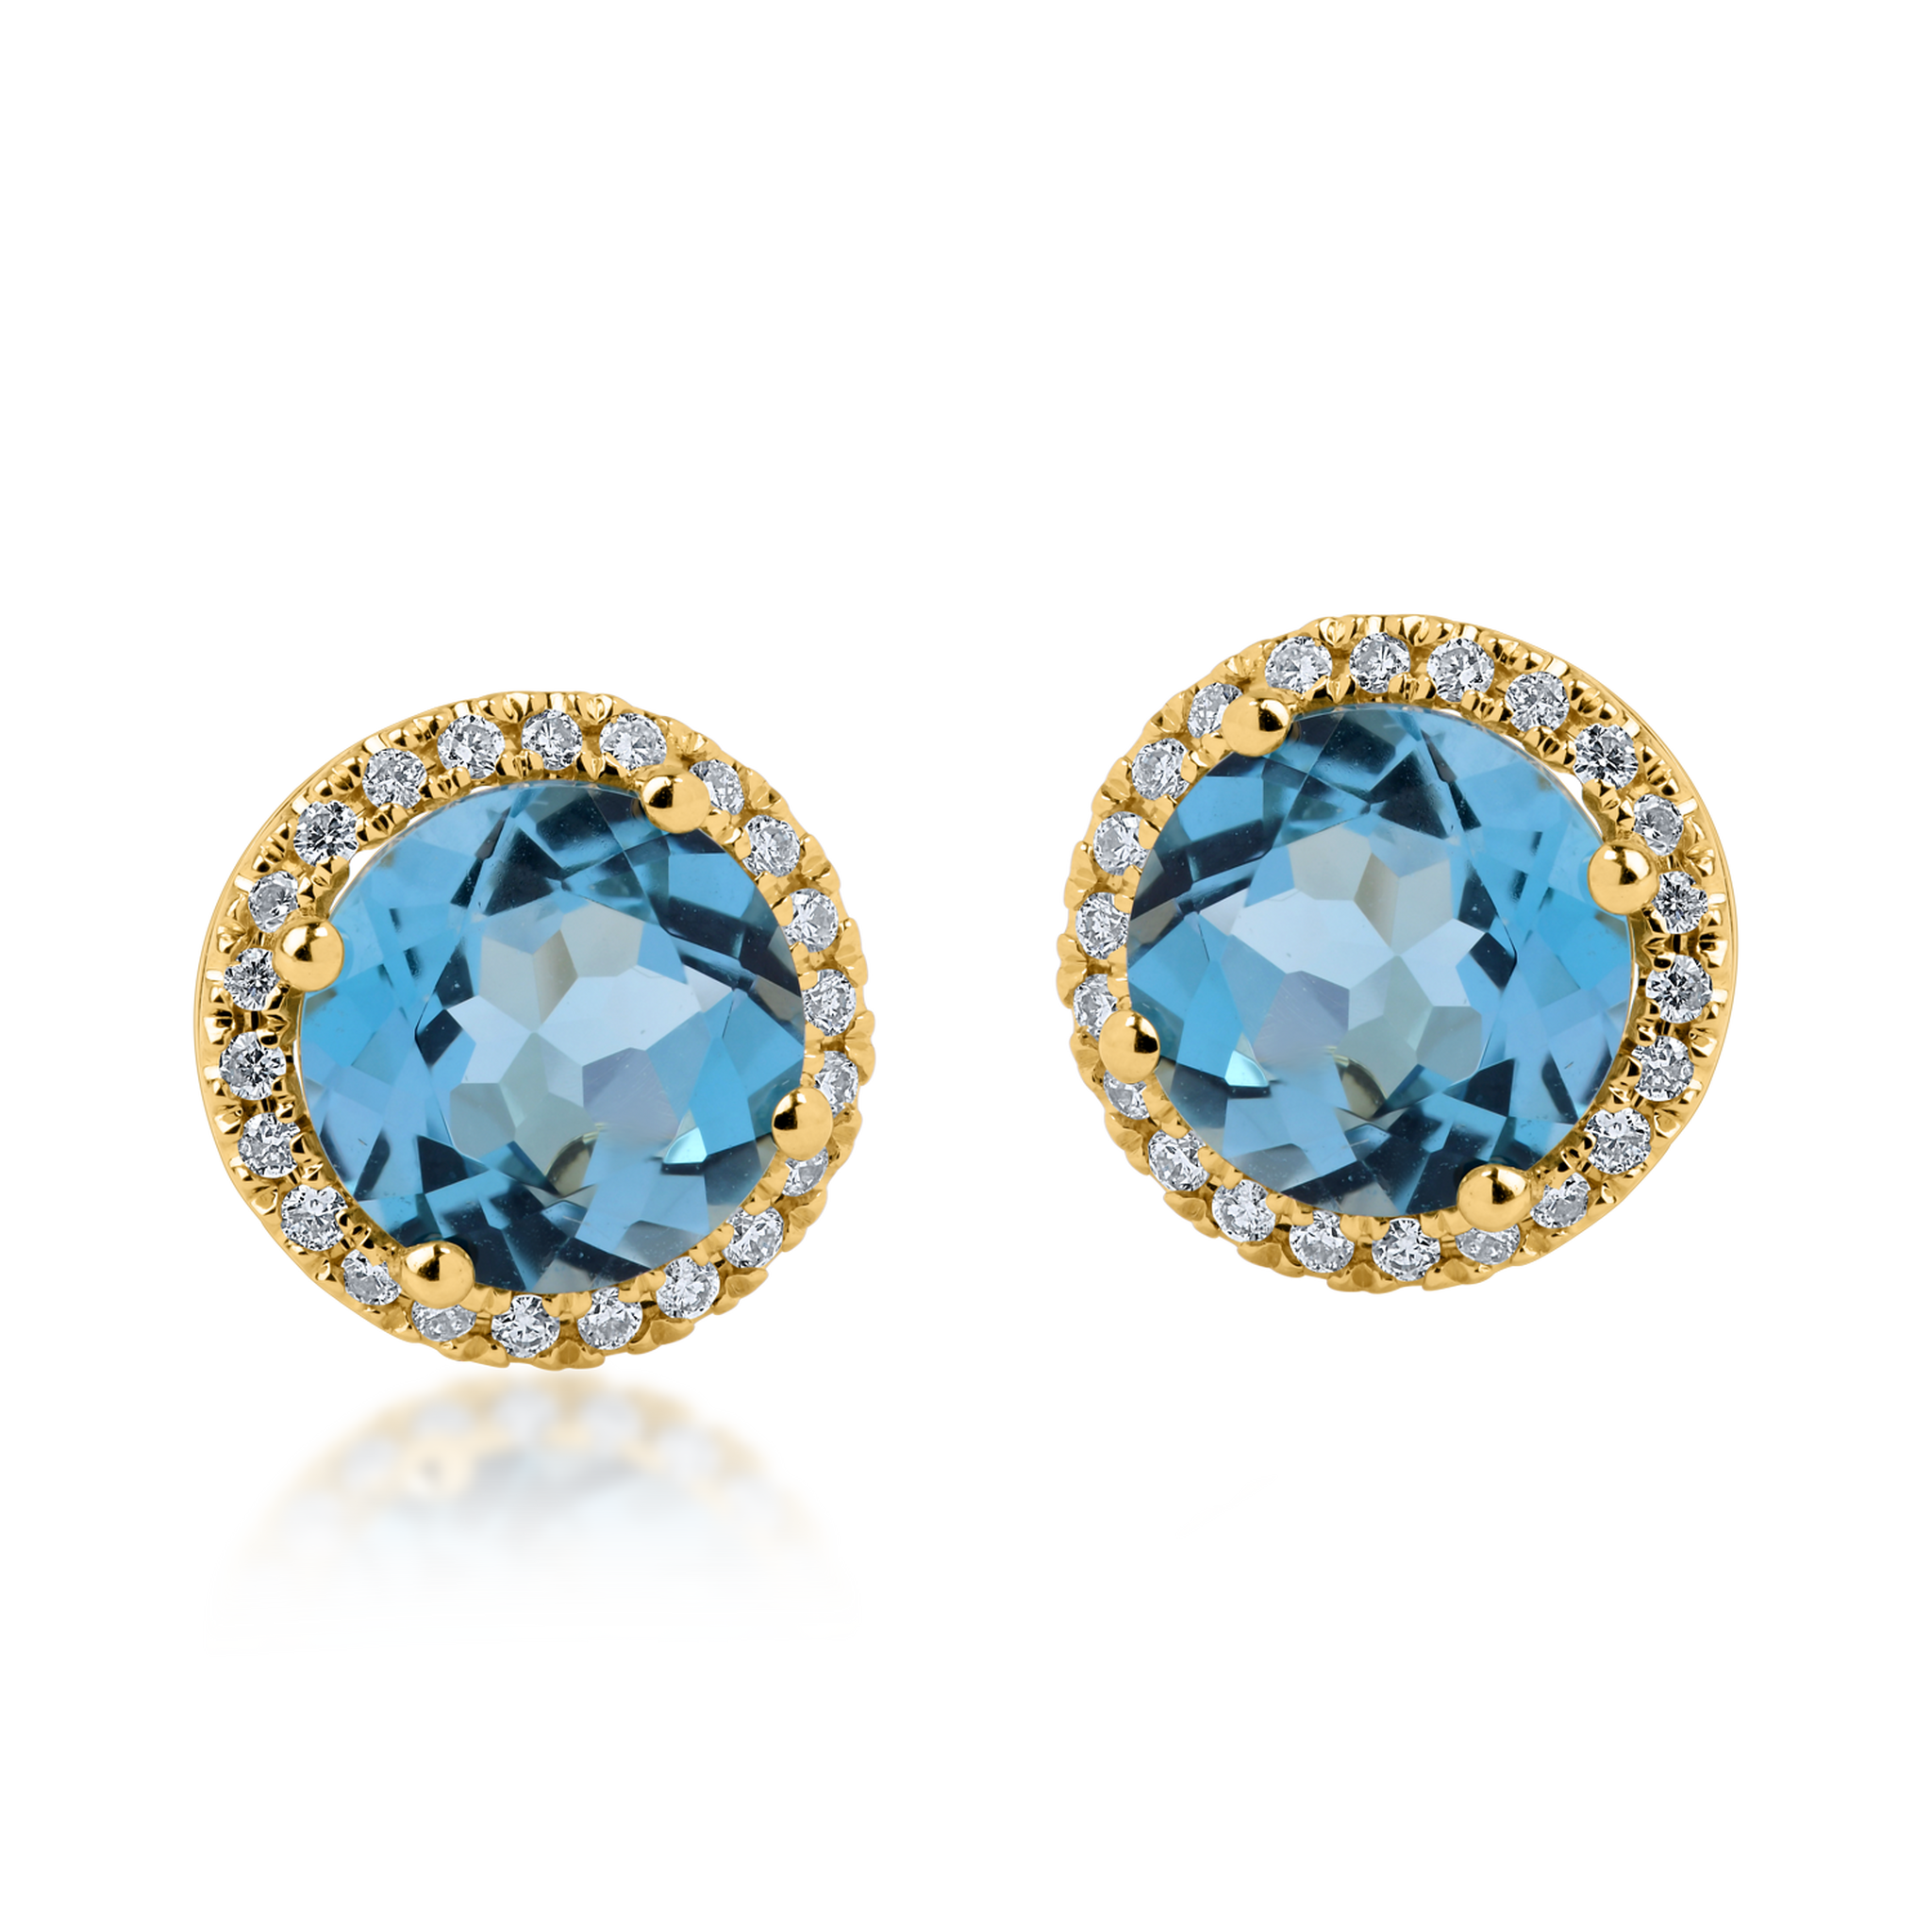 Cercei din aur galben cu topaze albastre de 3.1ct si diamante de 0.2ct